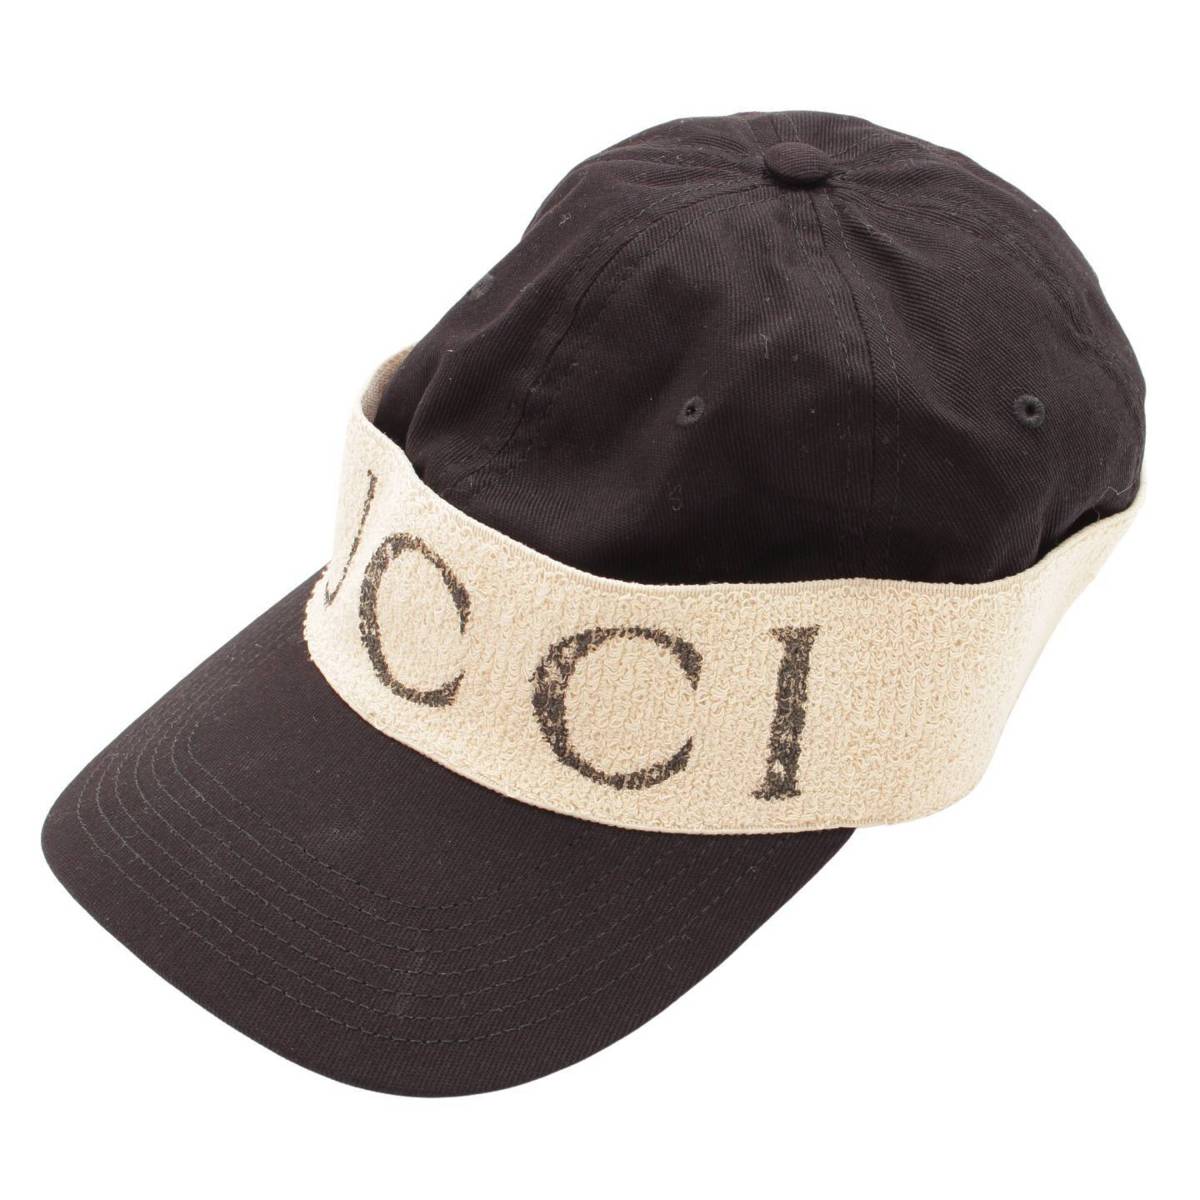 グッチ(Gucci) ヘアバンド付き ベースボール キャップ 帽子 ブラック